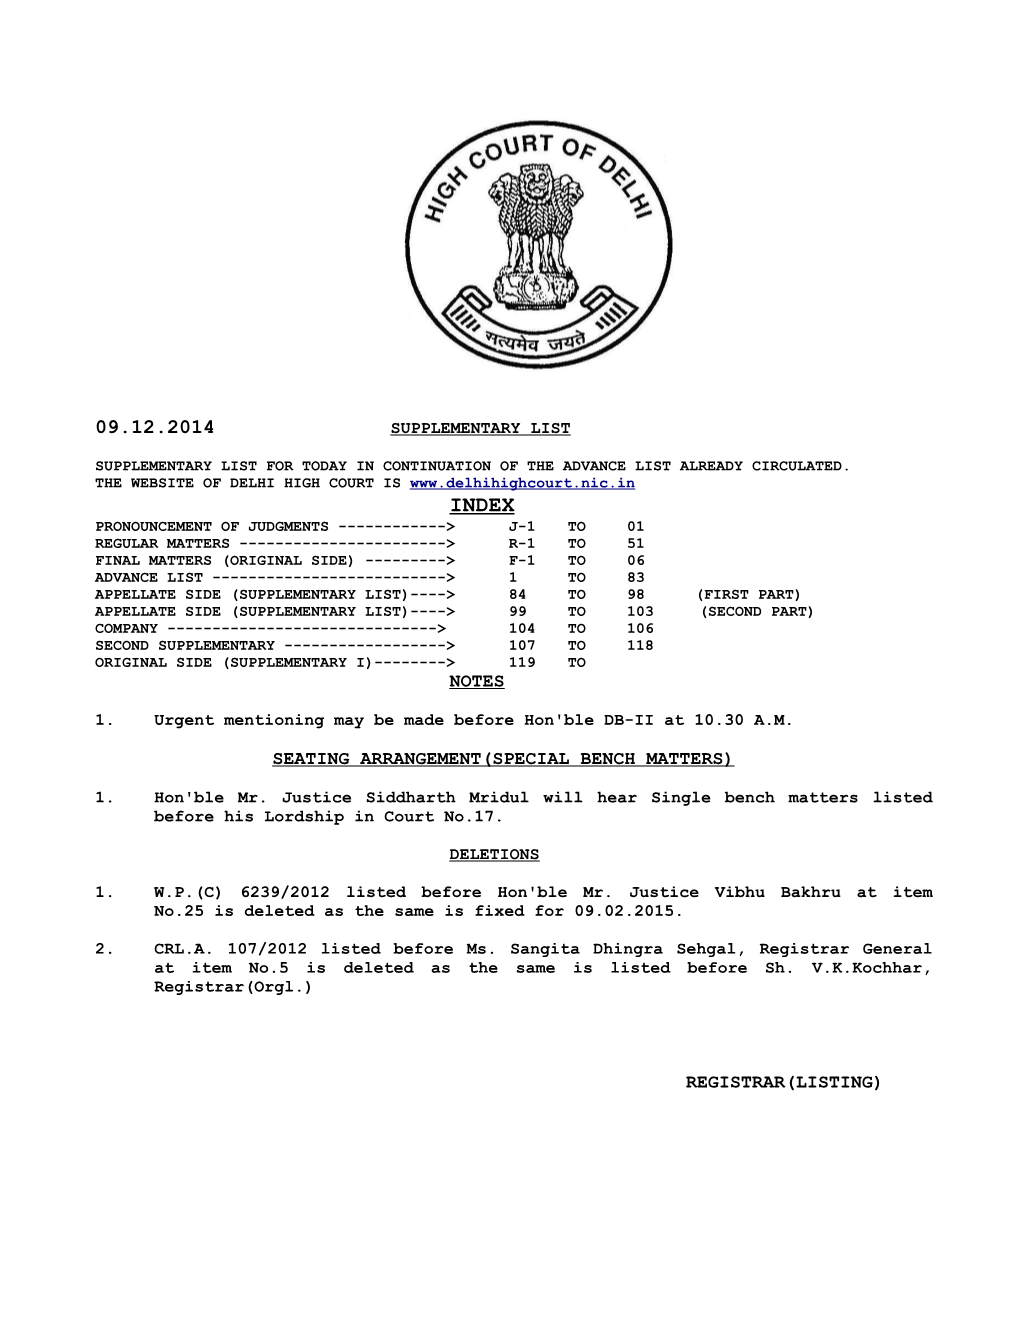 Registrar(Listing) 09.12.2014 J-1 Pronouncement of Judgements (Applt